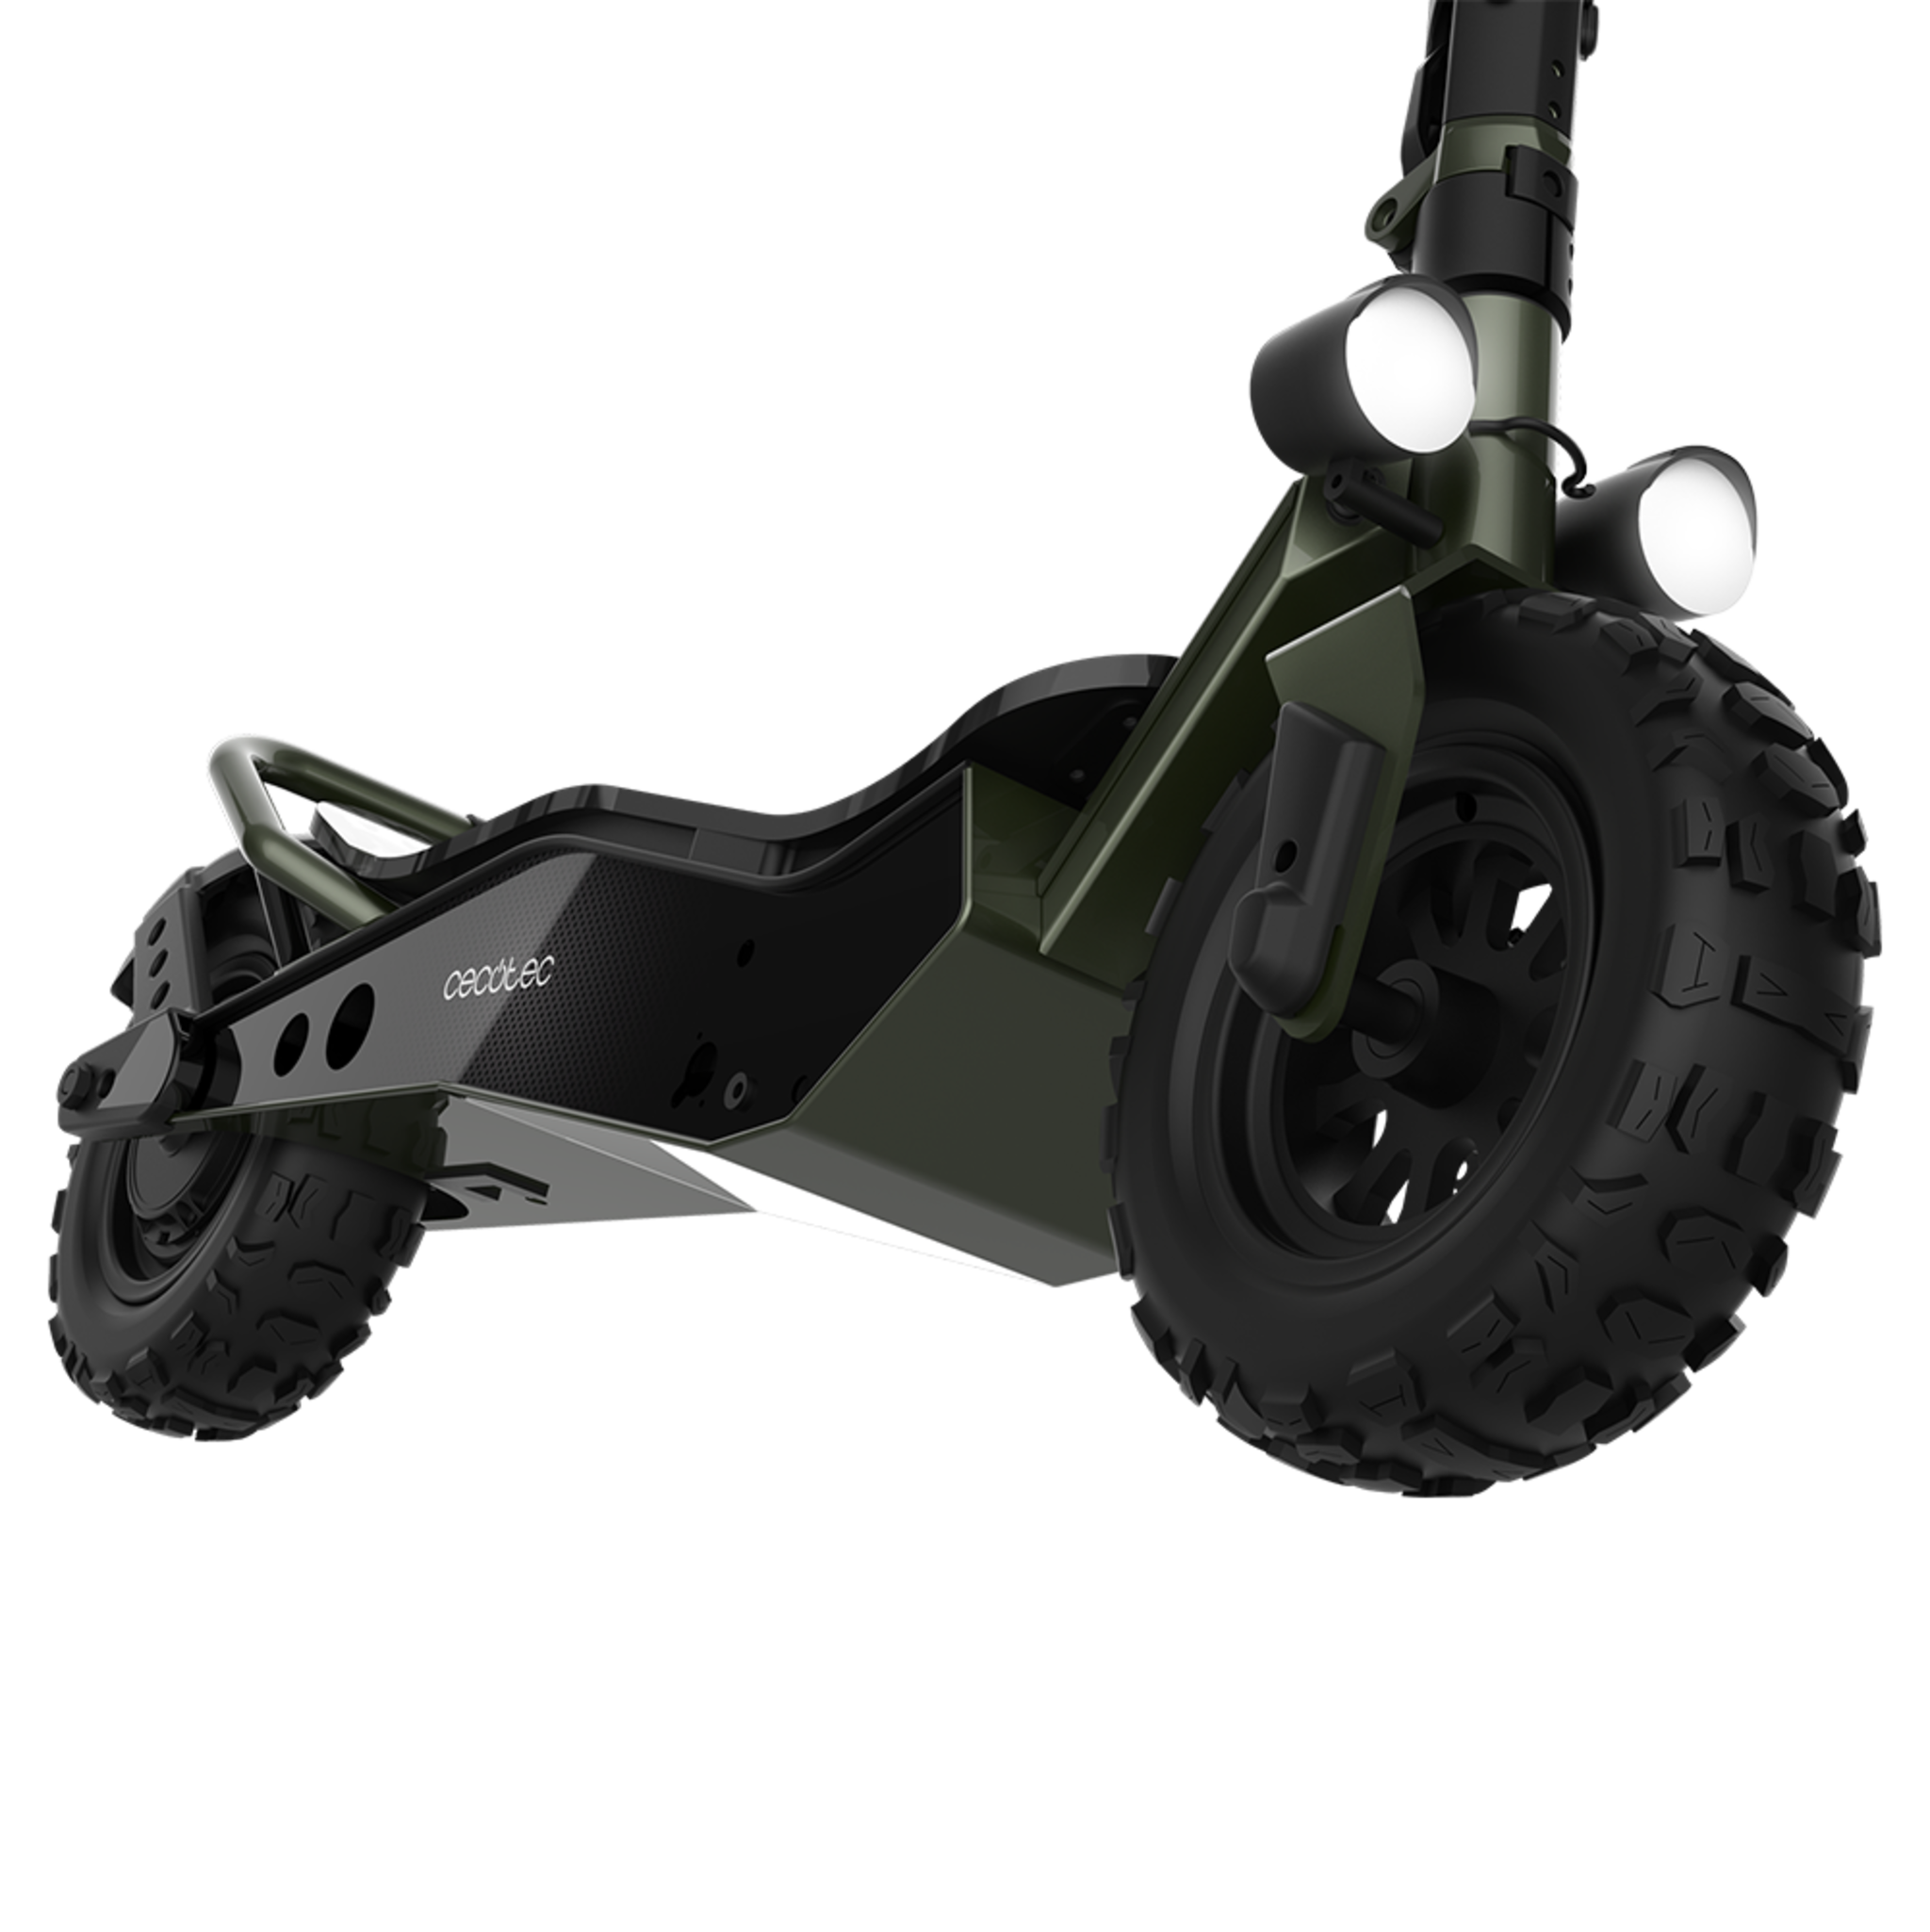 Trottinette électrique Bongo Serie Z Off Road Dark Green. Montez des pentes grâce à sa puissance maximale de 1100 W. Batterie extractible, autonomie illimitée jusqu'à 40 km, traction arrière